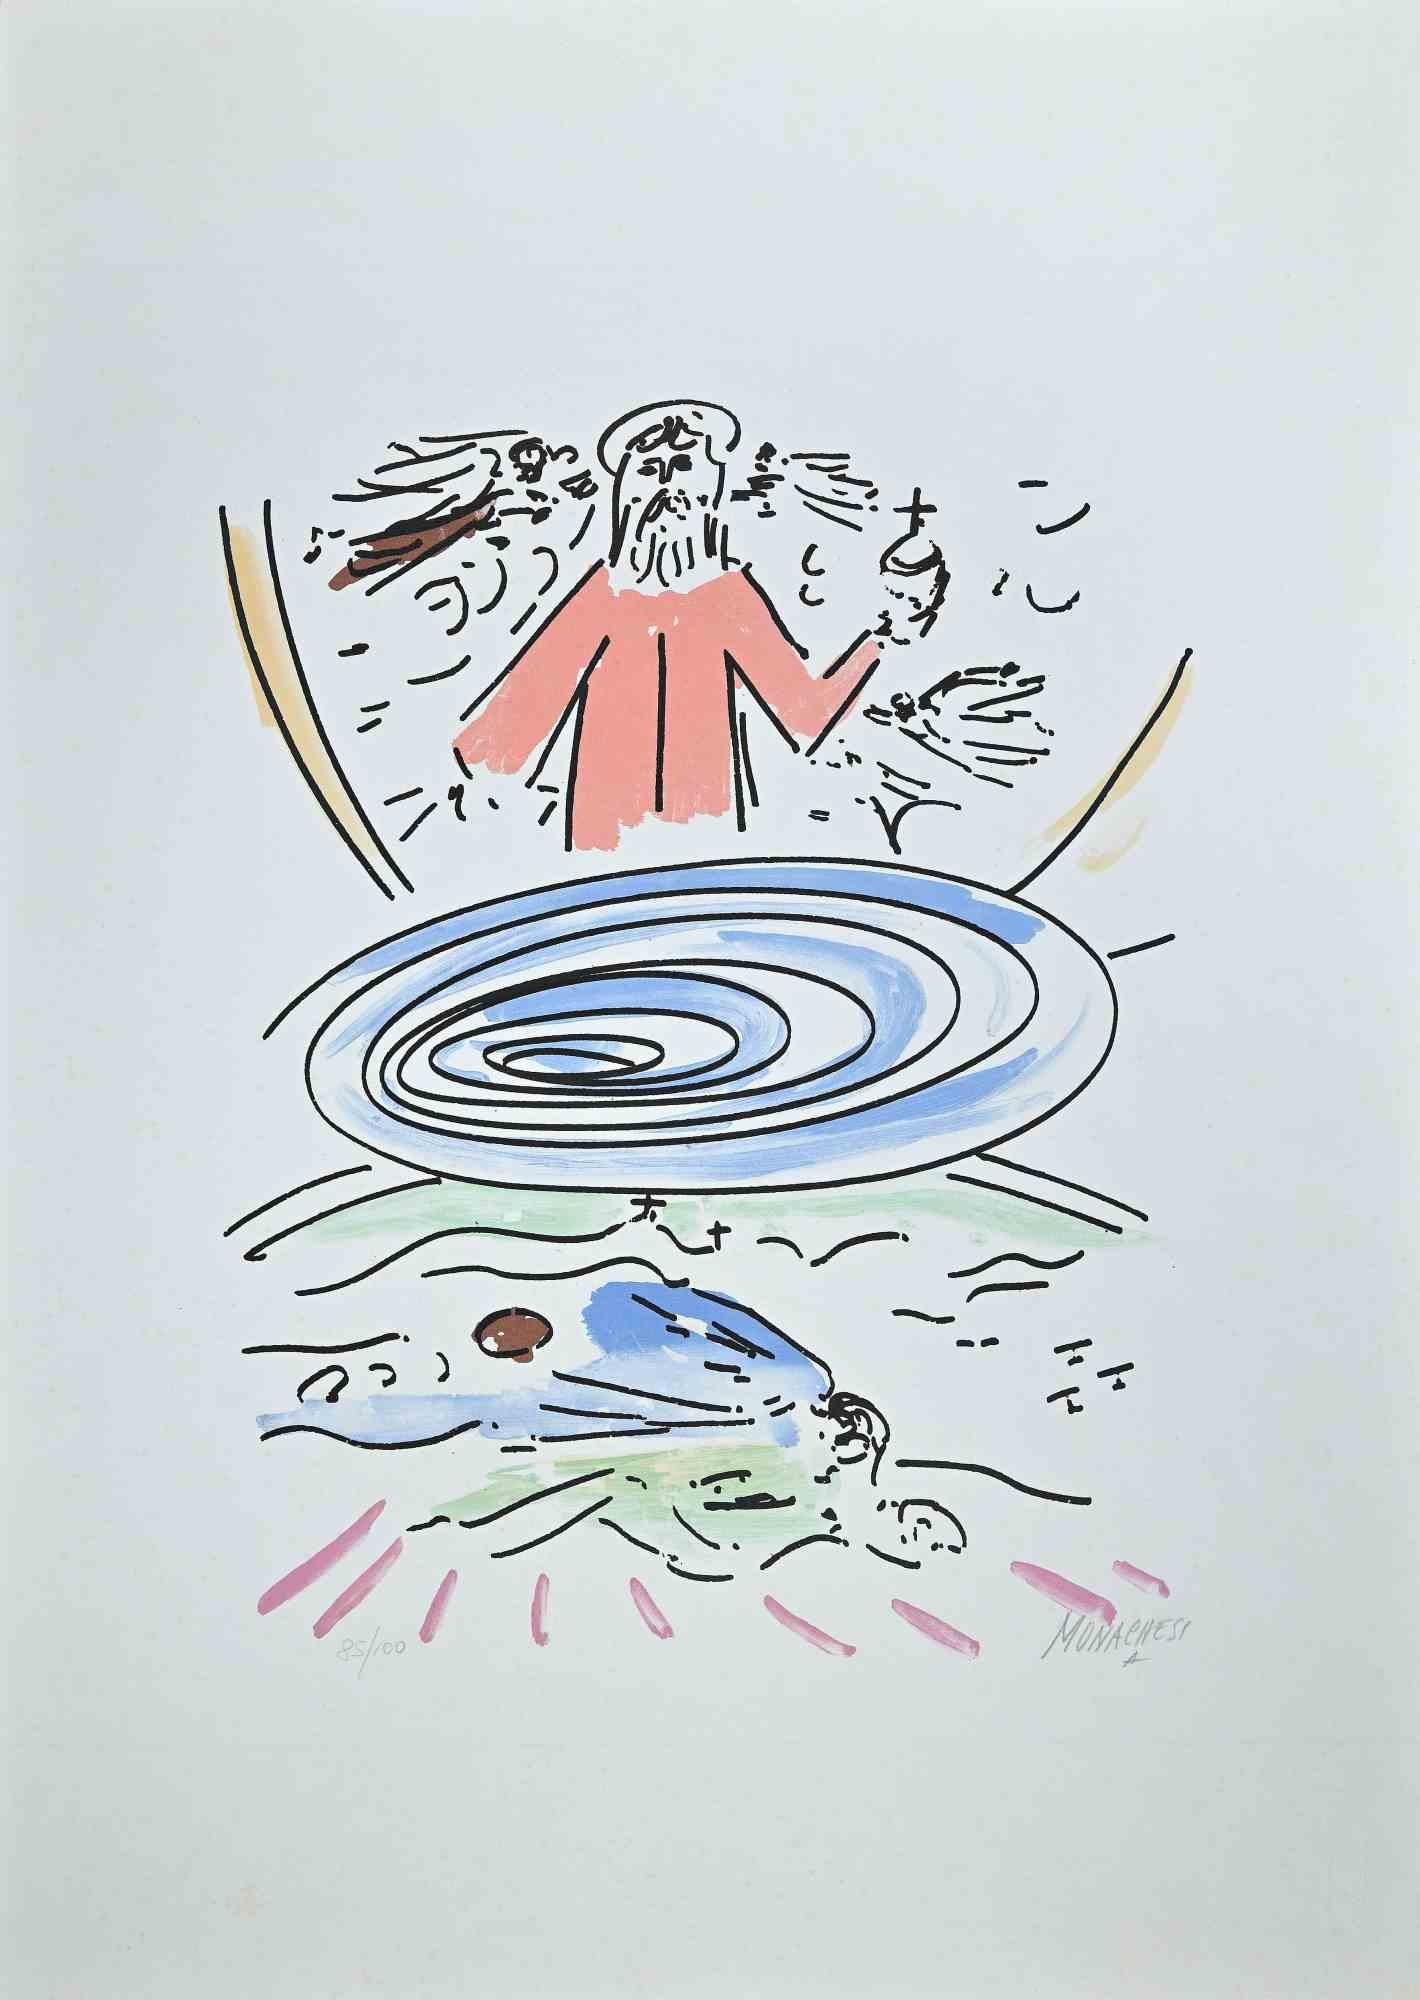 Paradiso est une lithographie colorée sur papier, réalisée par l'artiste italien  Sante Monachesi en 1977.

Signé à la main et numéroté au crayon dans la marge inférieure. Édition de 100 exemplaires.

Très bonnes conditions. Cette œuvre d'art